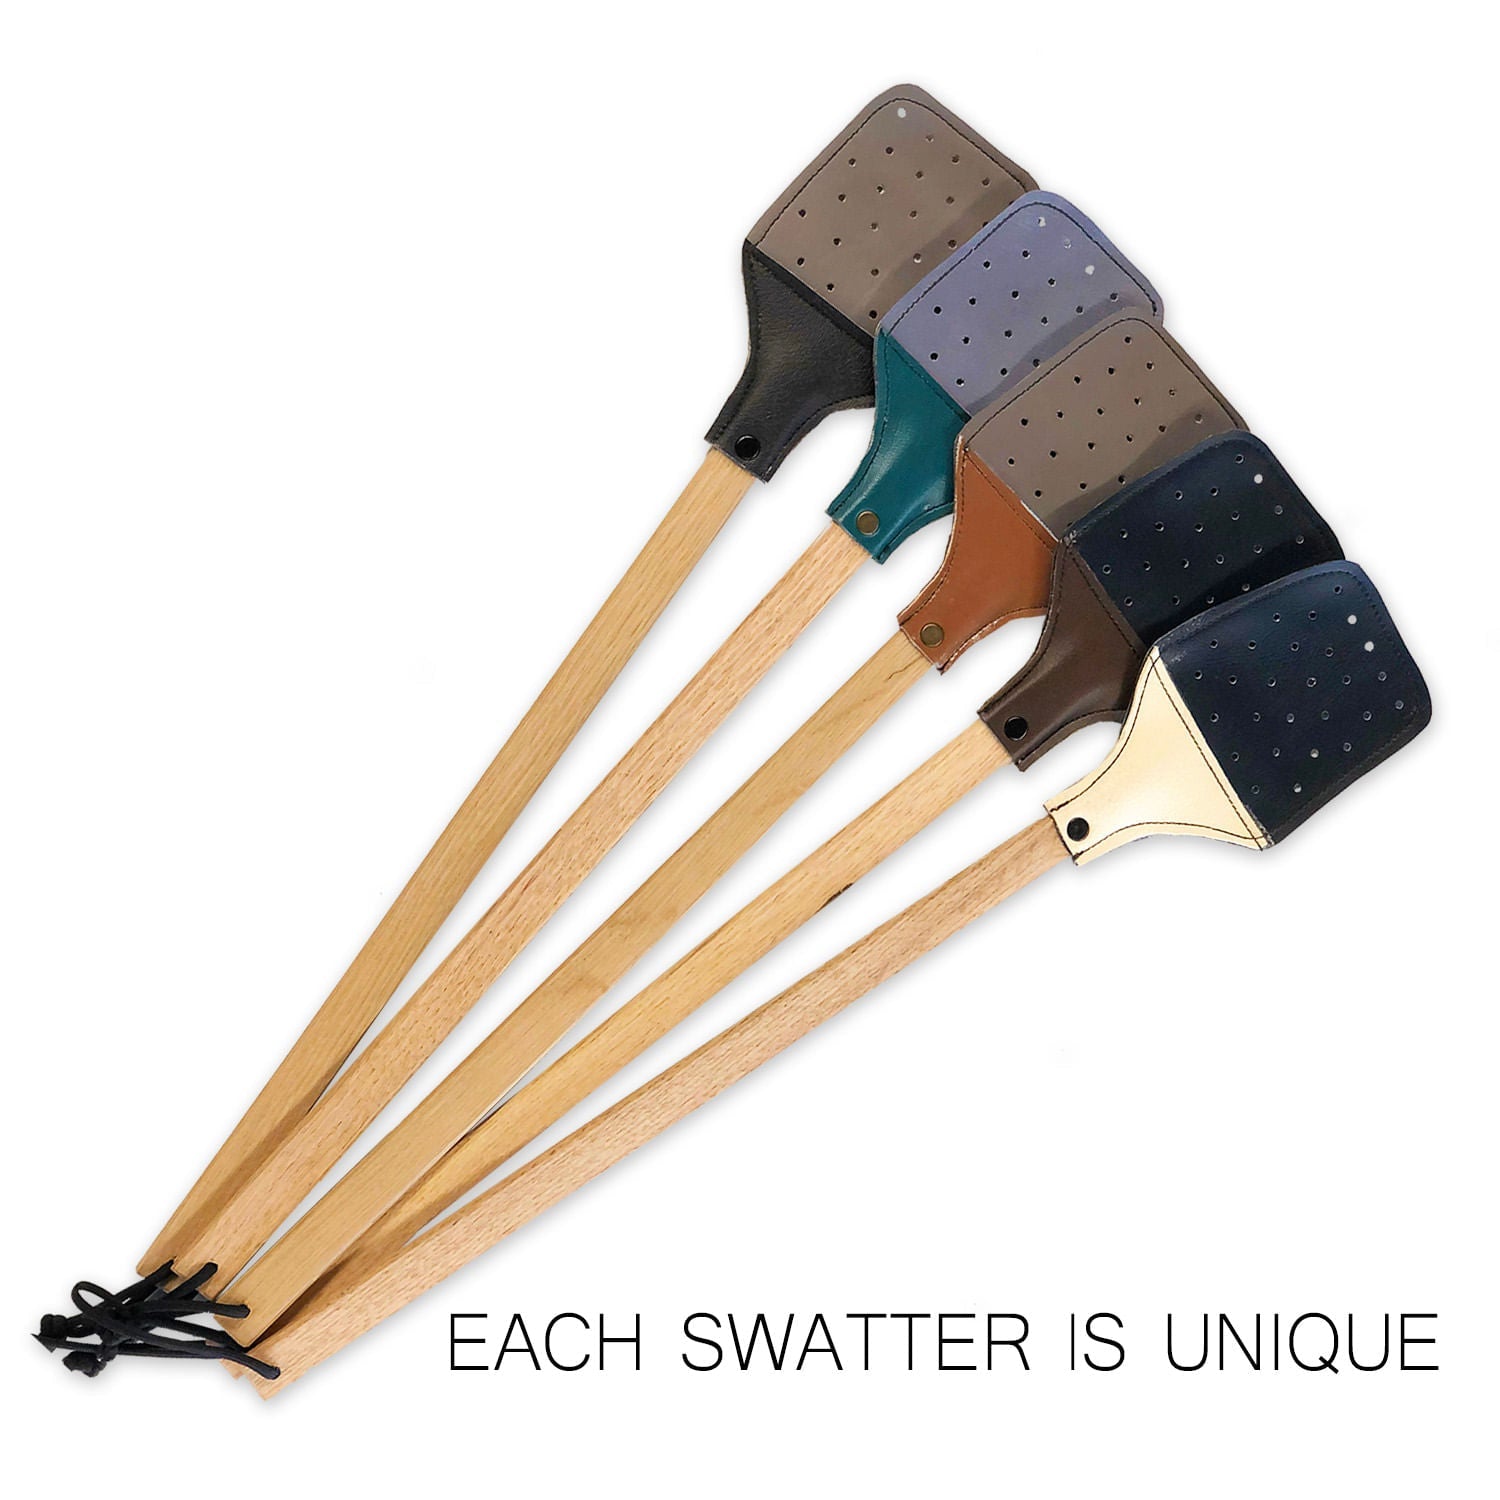 Each swatter is unique